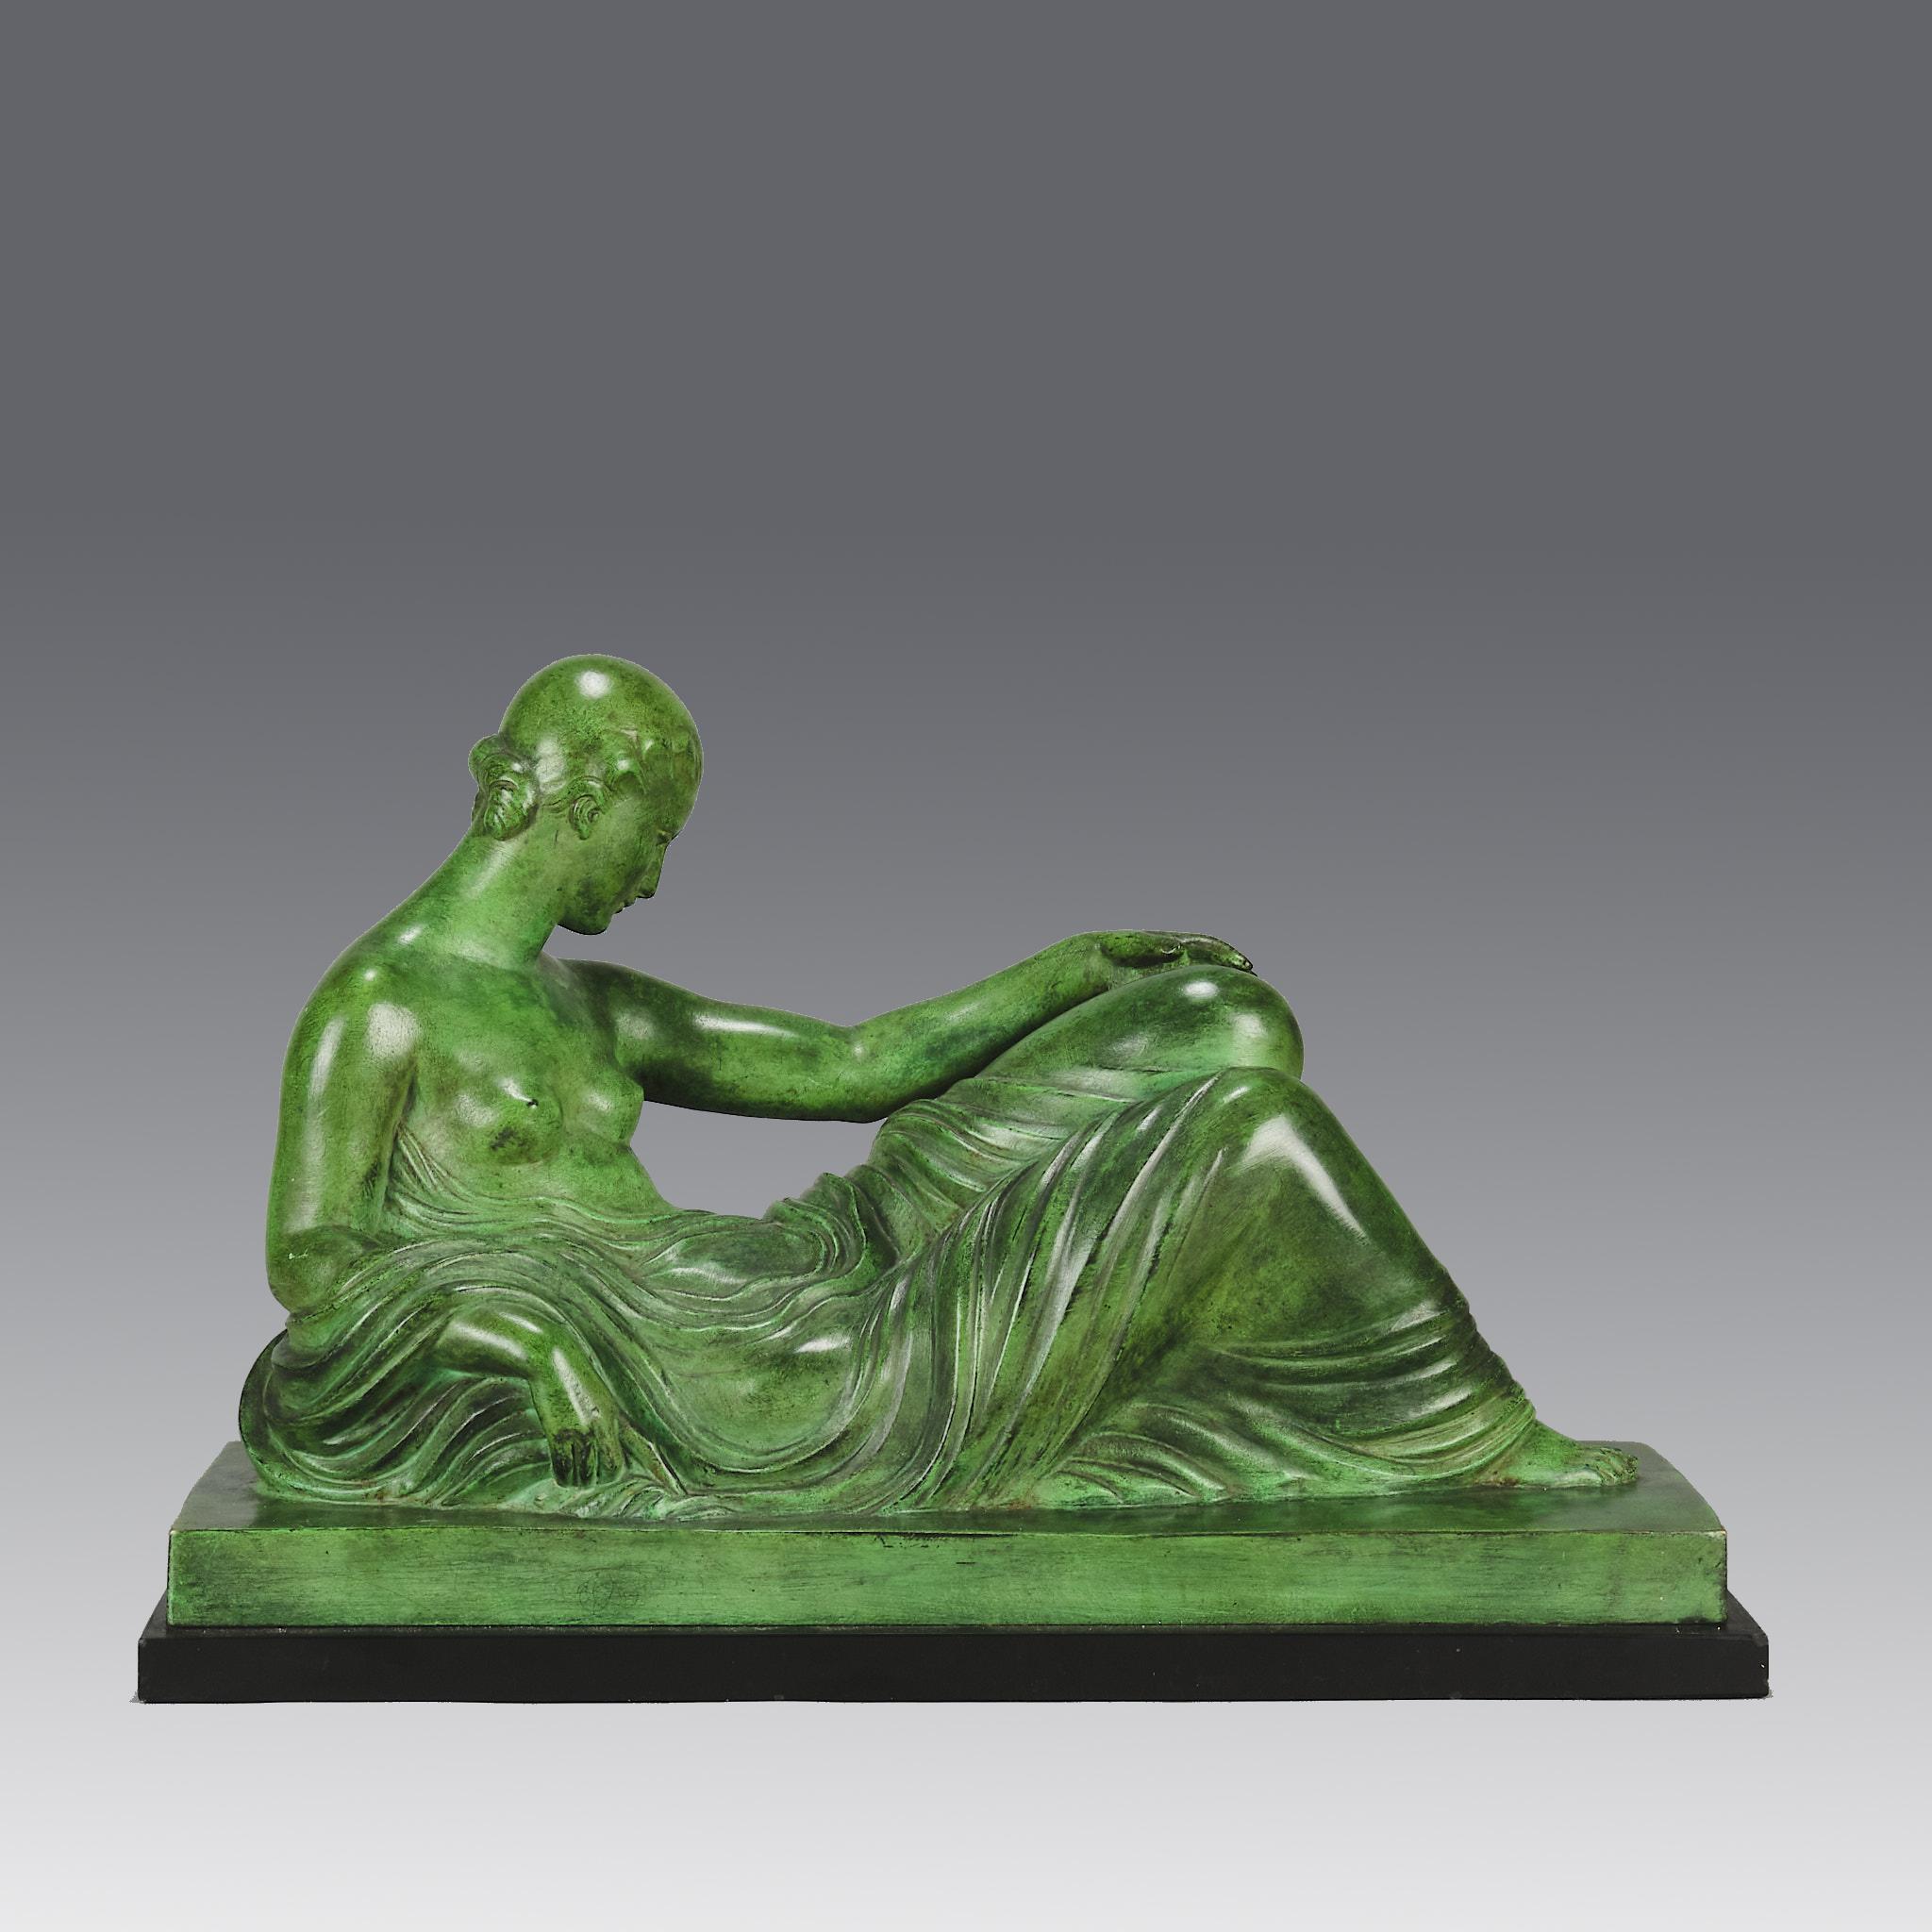 Eine attraktive Bronzefigur aus dem frühen 20. Jahrhundert im französischen Art Déco-Stil, die eine ruhende Schönheit darstellt, die auf einem Tagesbett liegt und ein zartes Tuch über sich drapiert hat. Die Bronze weist eine attraktive tiefgrüne